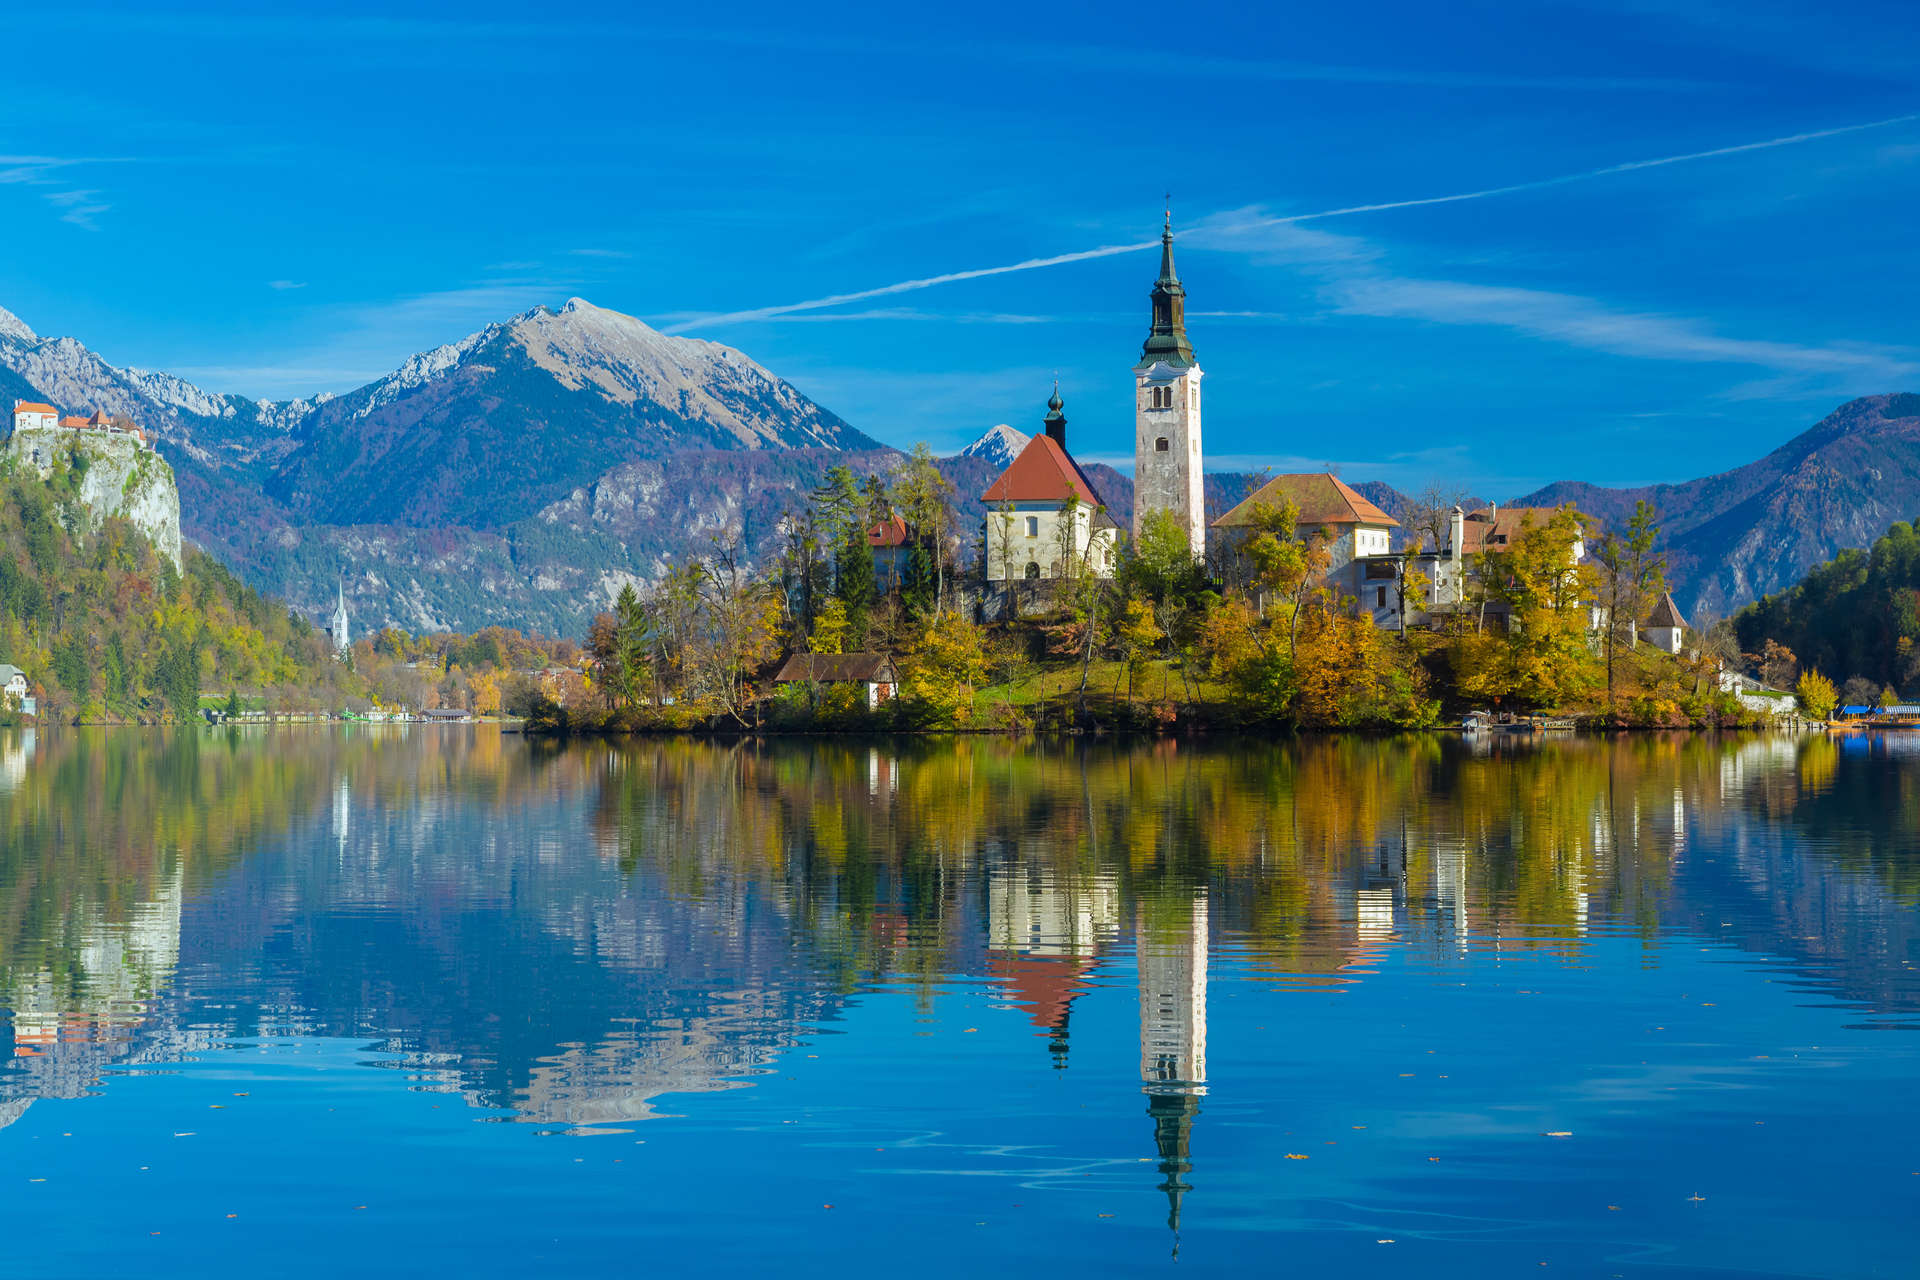 L'isola del lago di Bled, in Slovenia, con la sua chiesa, è un luogo ideale per scattare foto.